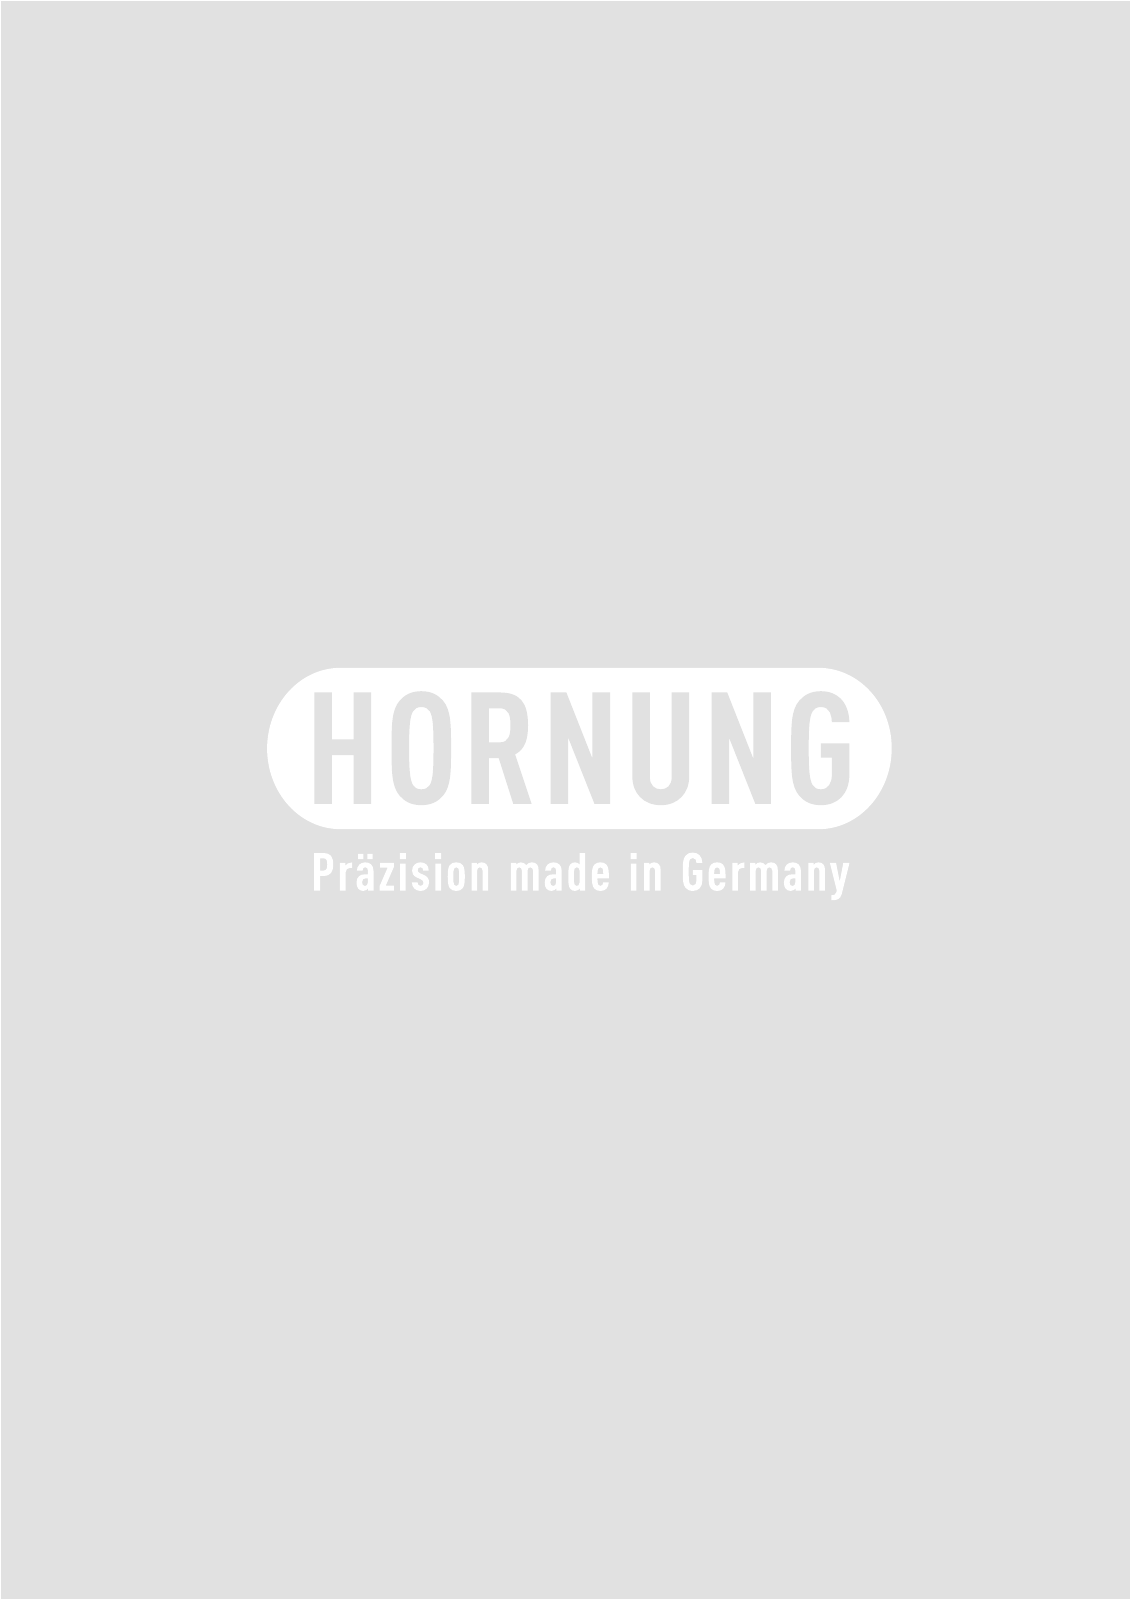 Vorschau Katalog Armaturen für Reinstgase - Hornung GmbH Seite 146